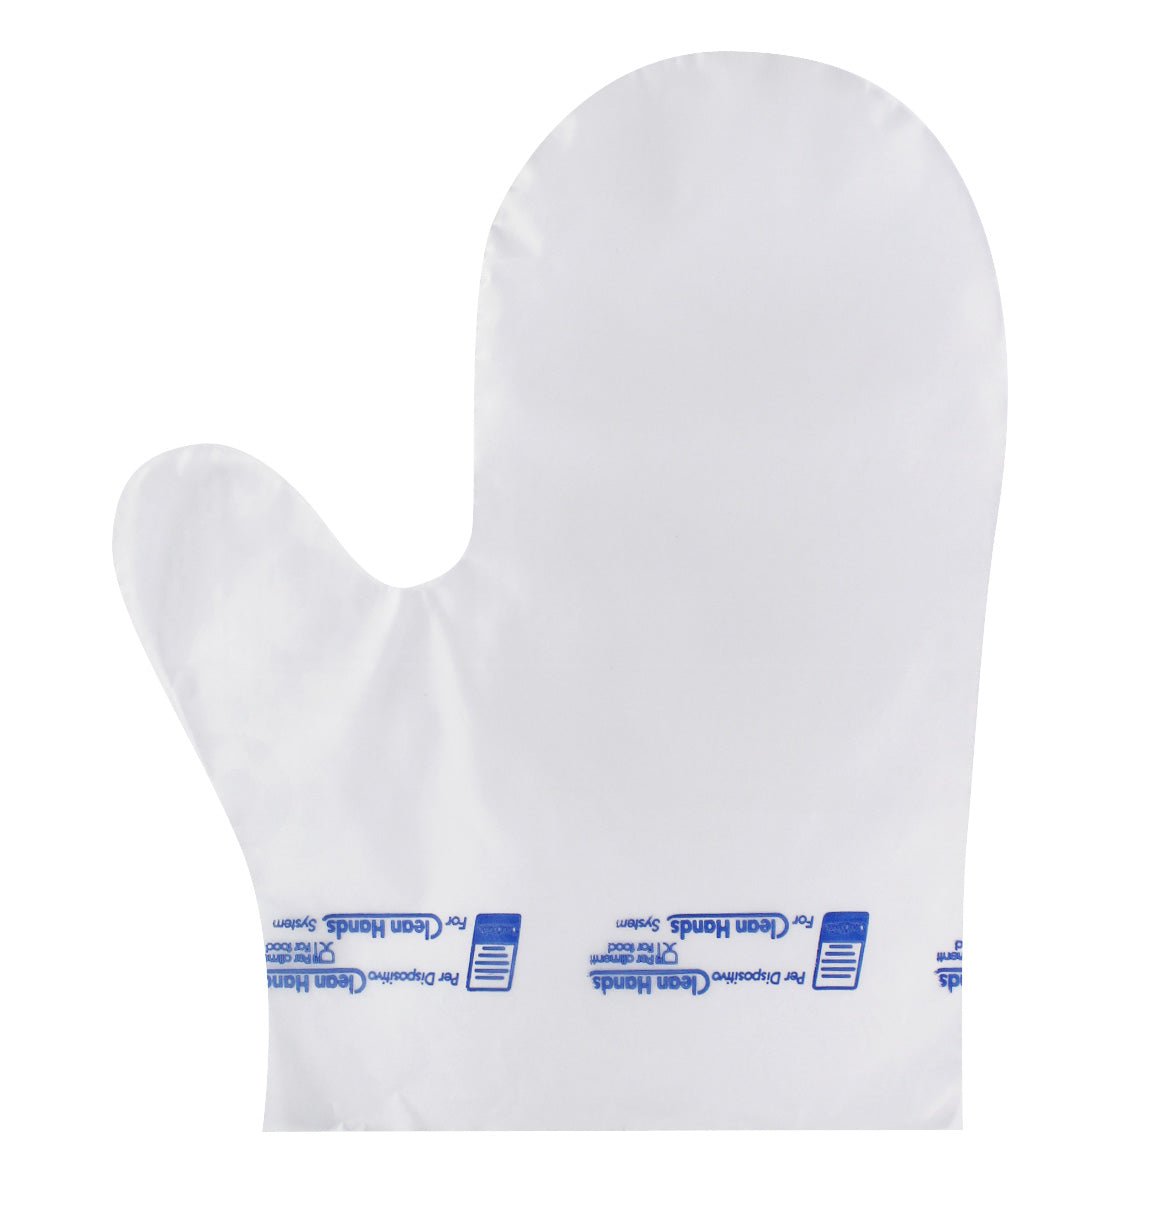 Papstar Fäustling Handschuhe Clean Hands transparent